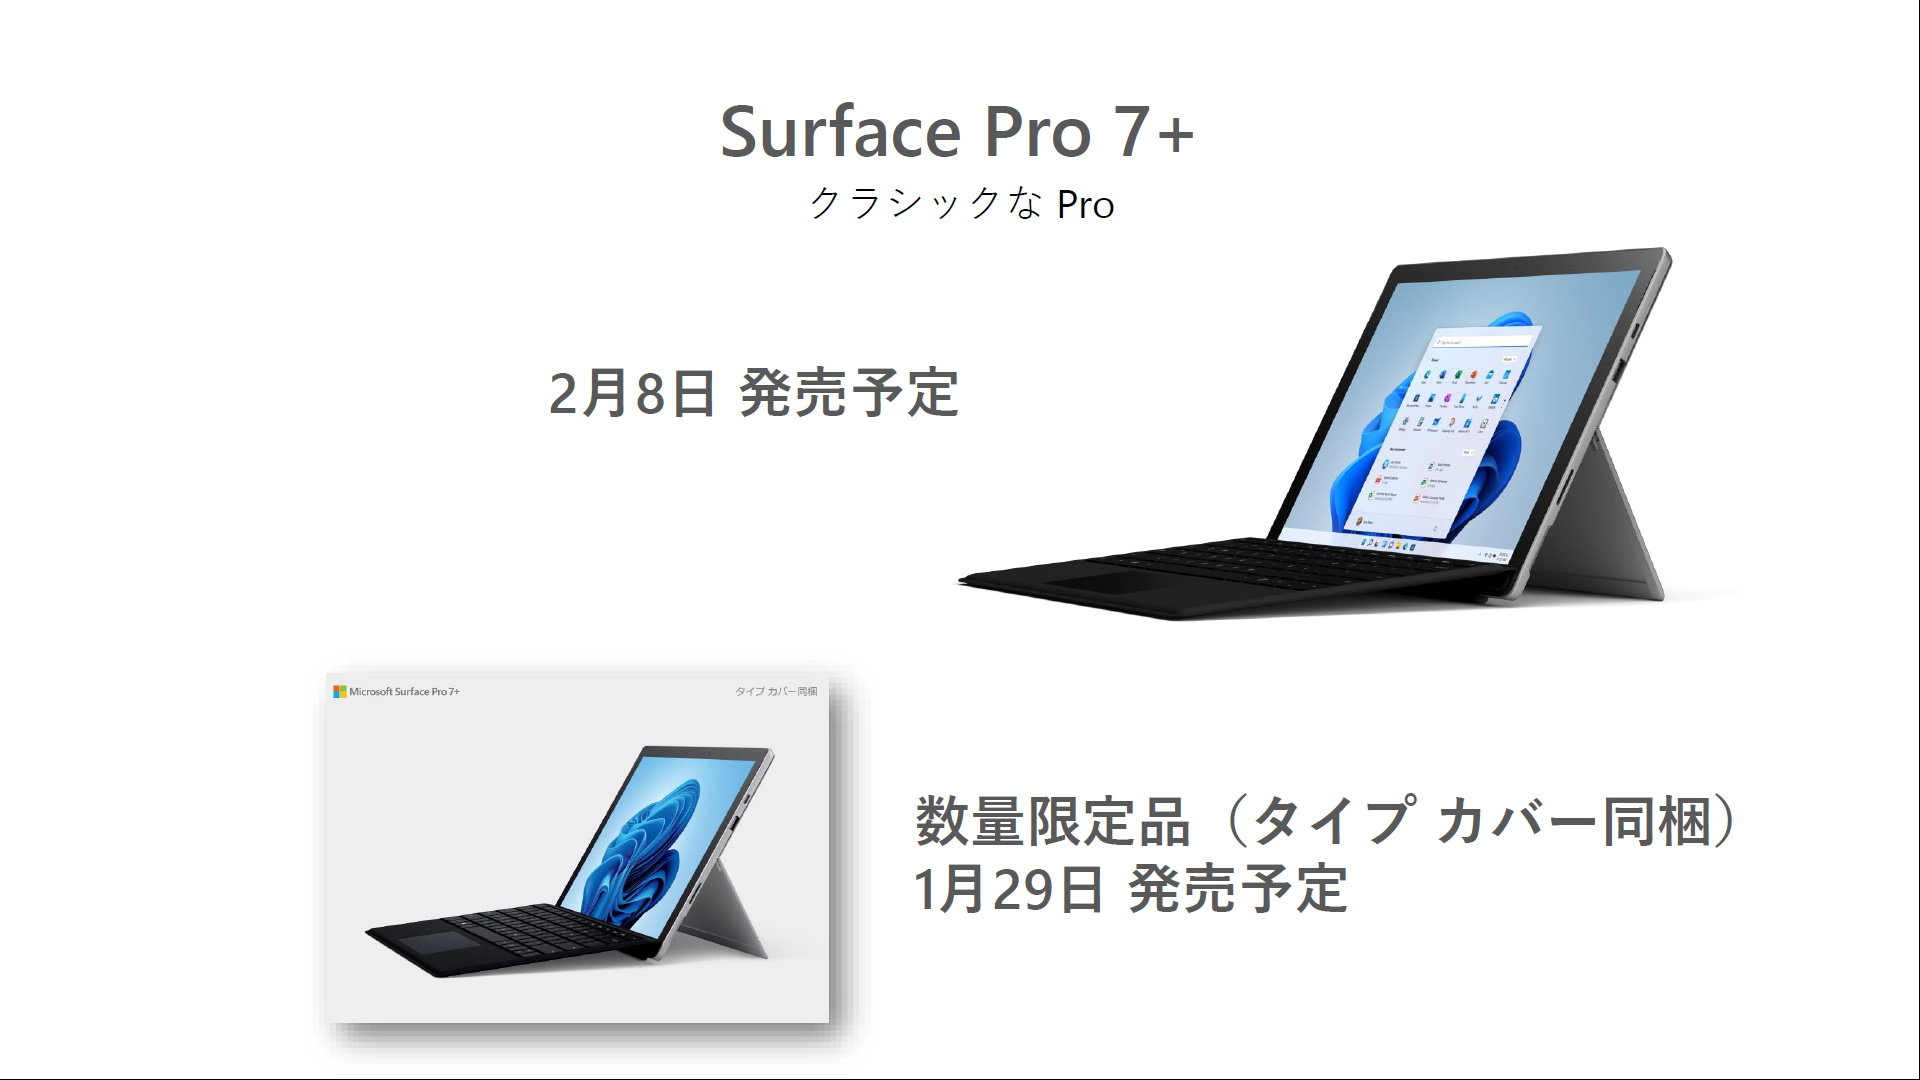 Surface Pro 7+」の個人向けモデルが登場 タイプカバー付きモデルを ...